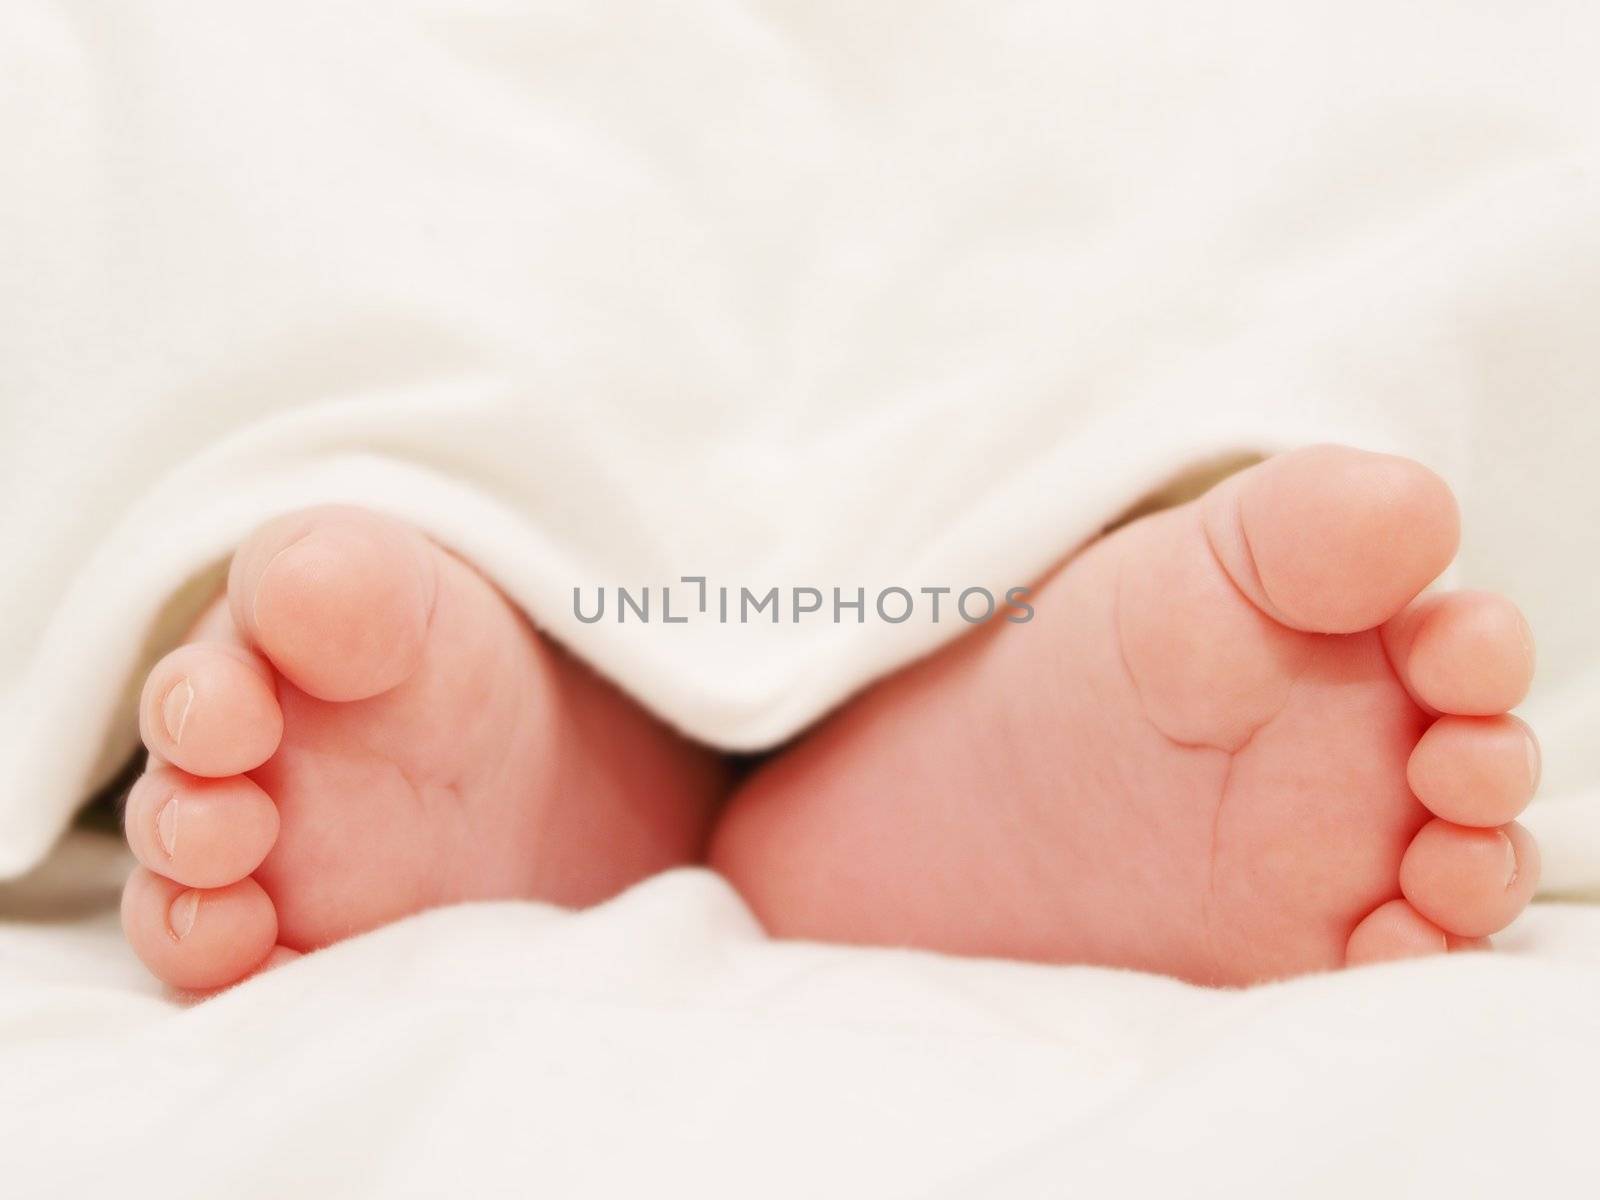 Baby feet by Arvebettum